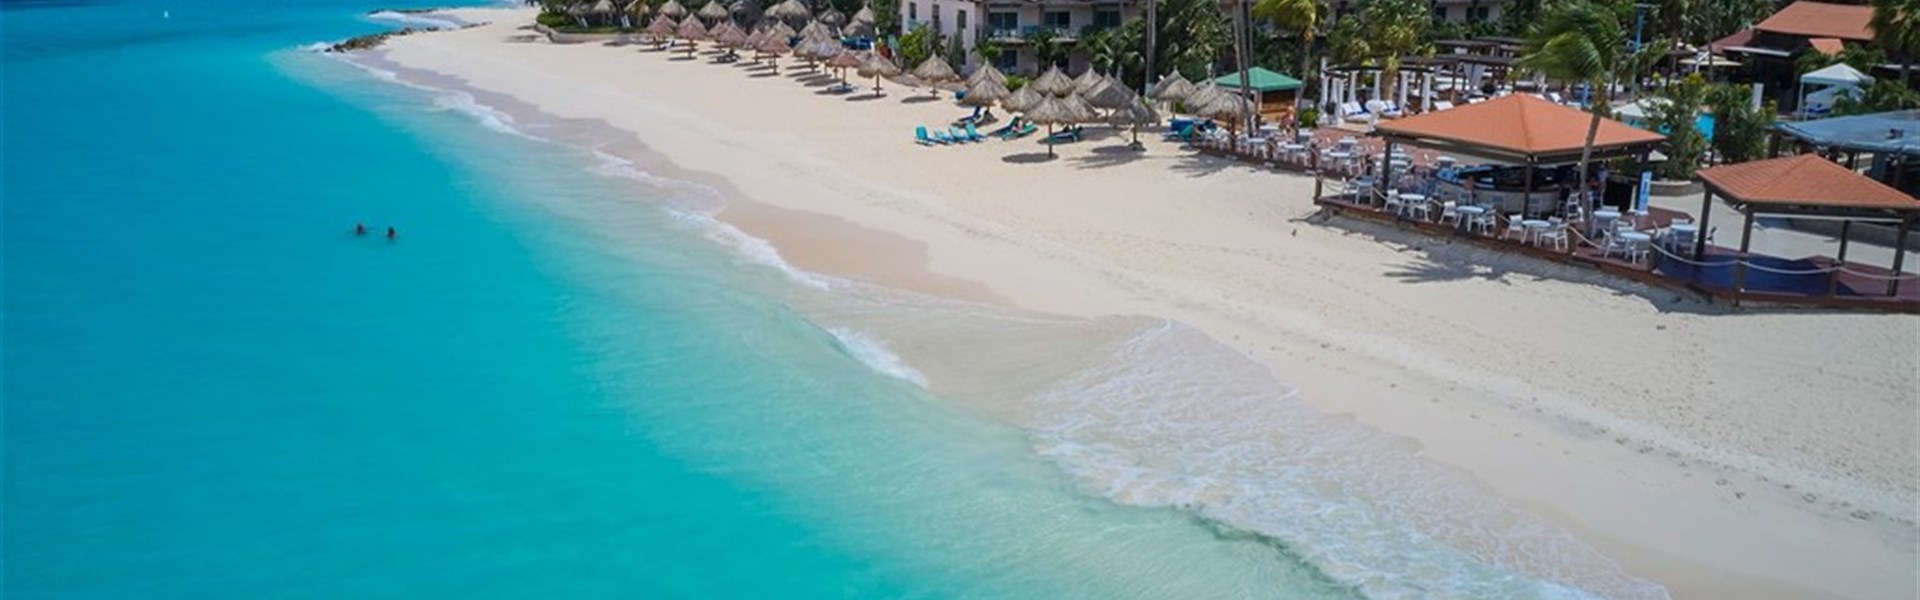 Marco Polo - Divi Aruba All Inclusive Resort - 